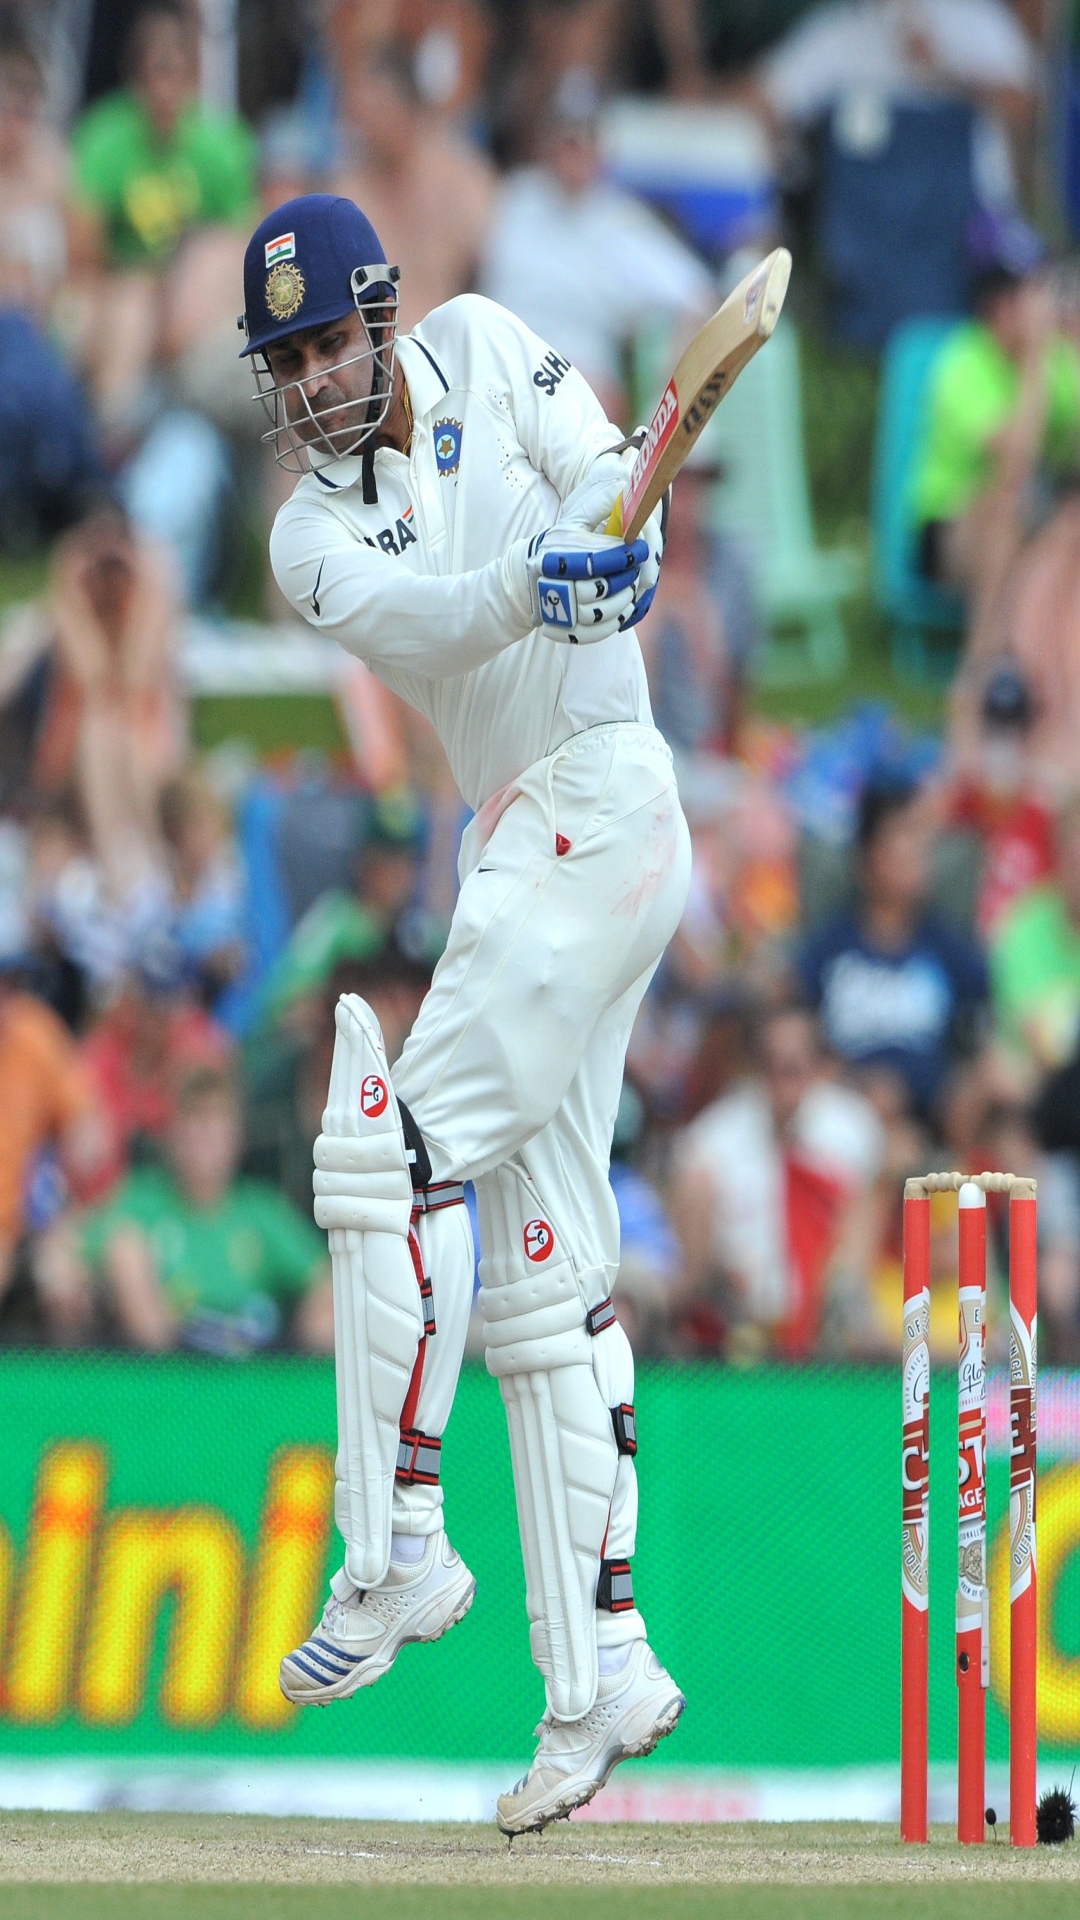 टेस्ट क्रिकेट में सबसे ज्यादा बार दोहरा शतक लगाने वाले खिलाड़ी